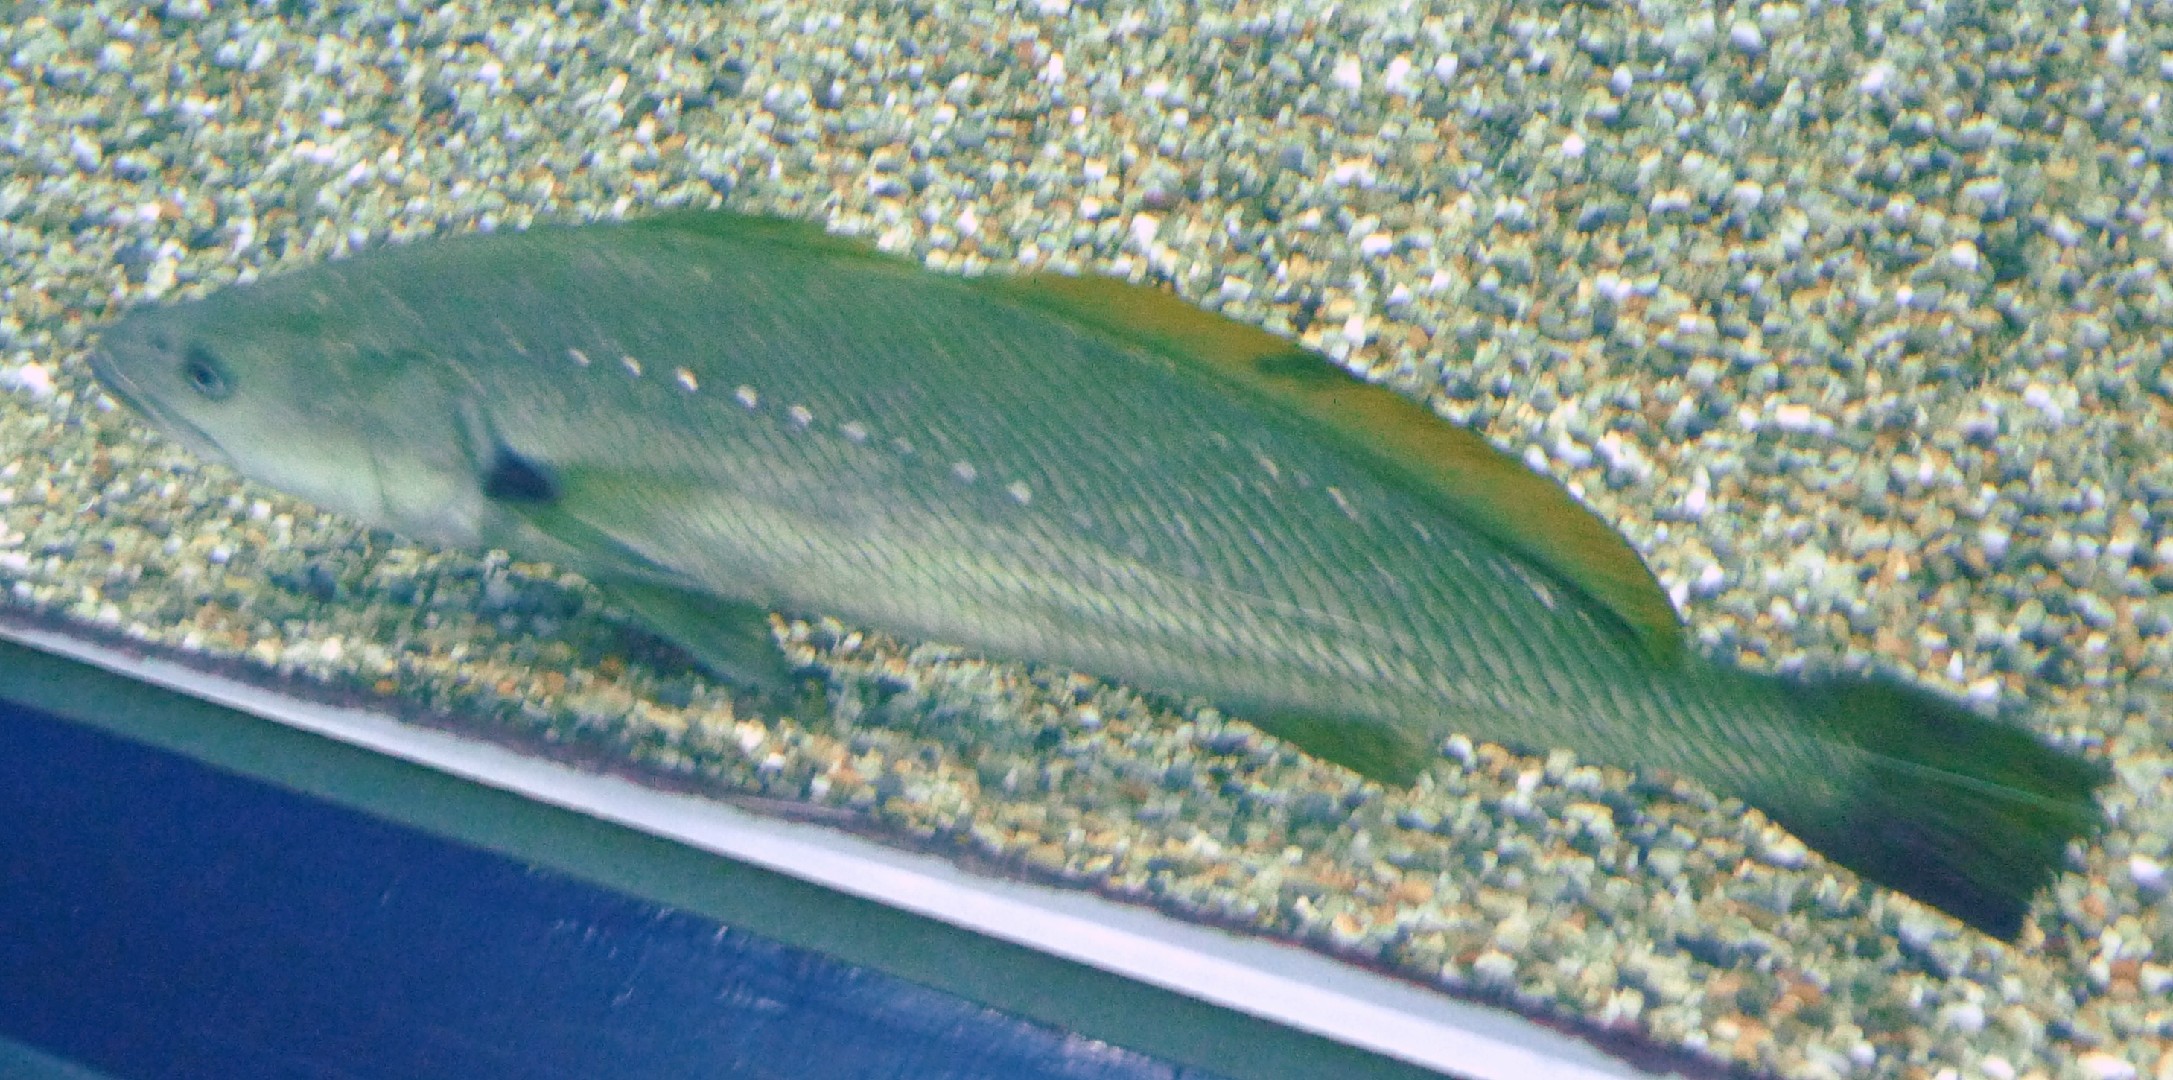 Japanische königsfisch (Argyrosomus japonicus)